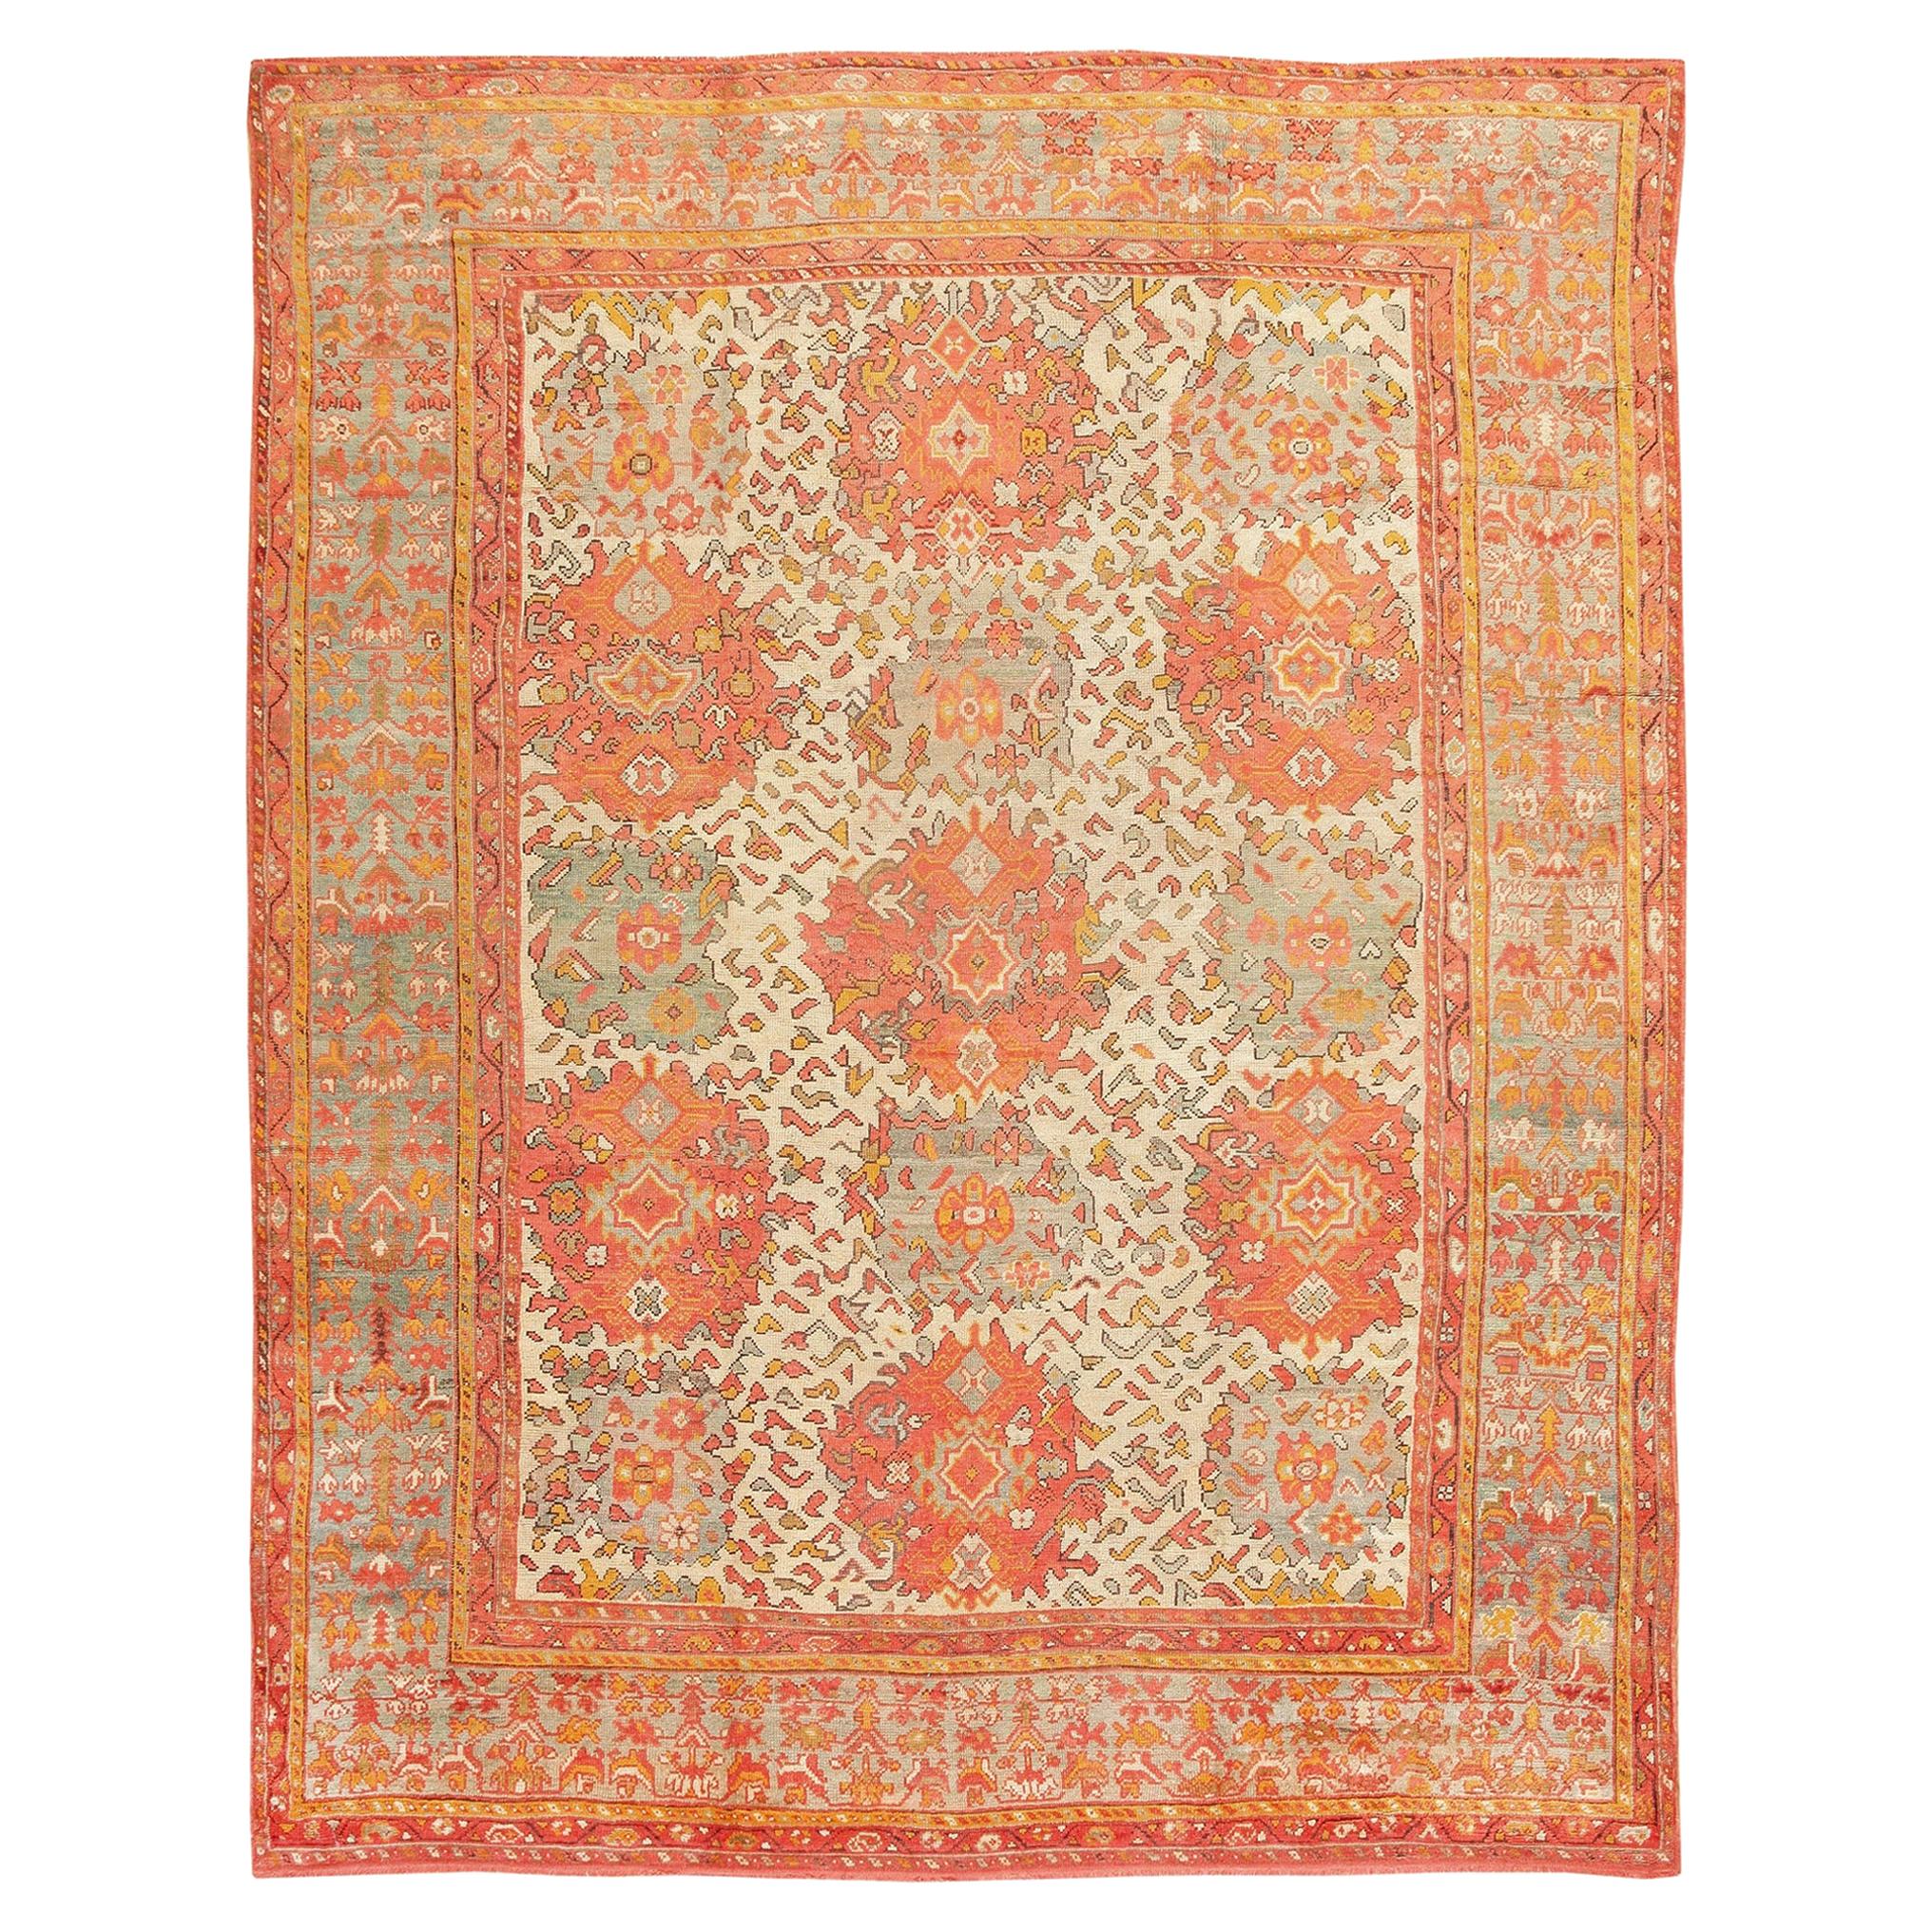 Antique Turkish Oushak Carpet. Size: 12 ft x 16 ft (3.66 m x 4.88 m)